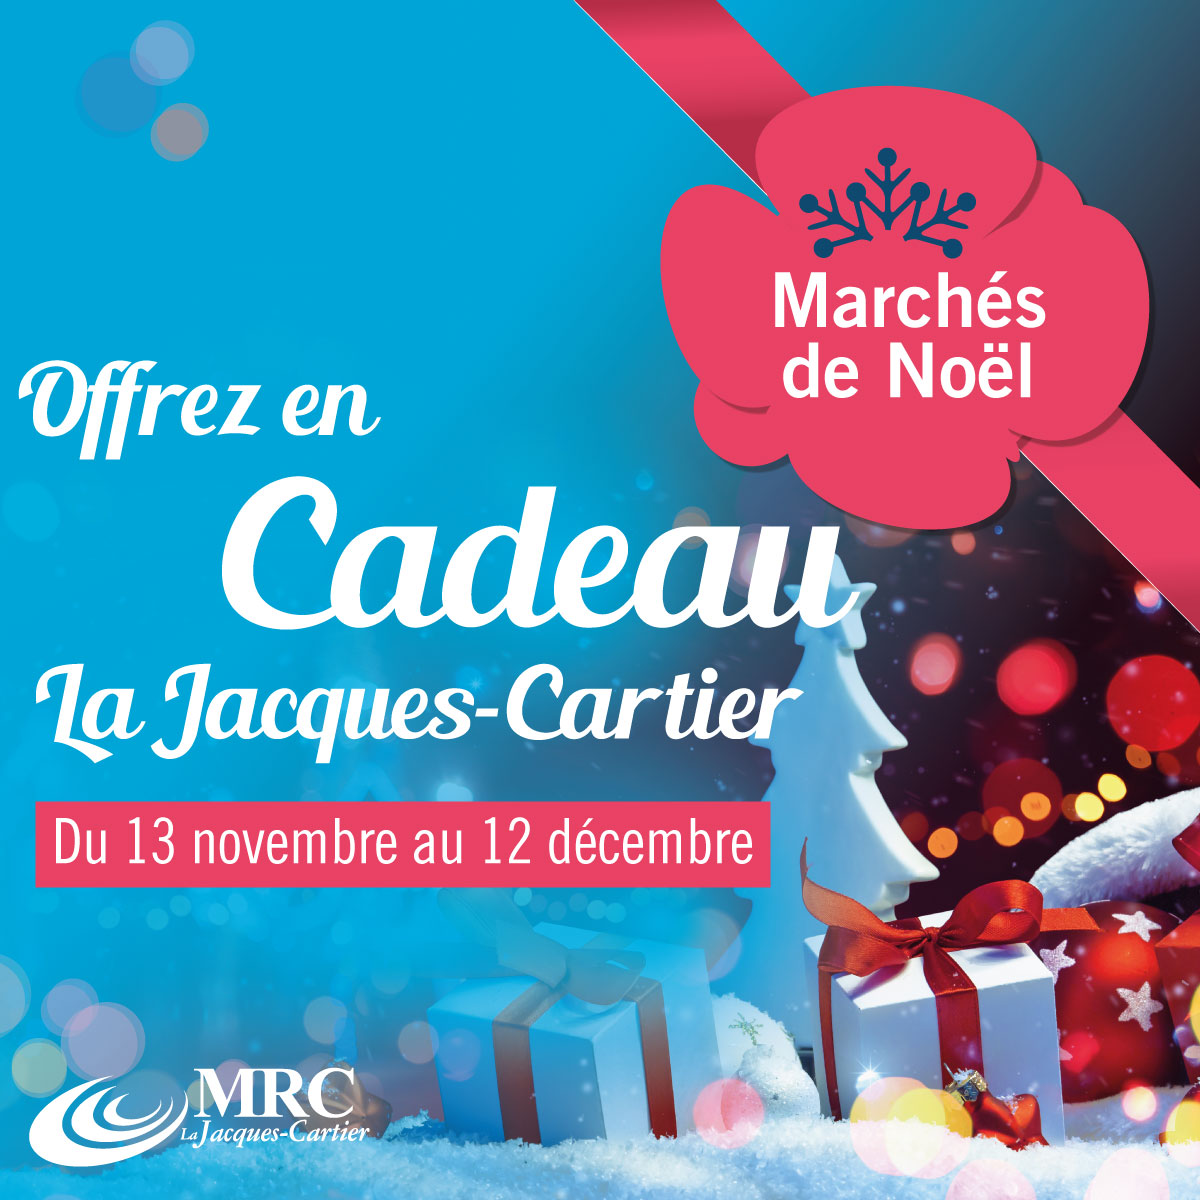 Offrez la Jacques-Cartier en cadeau!